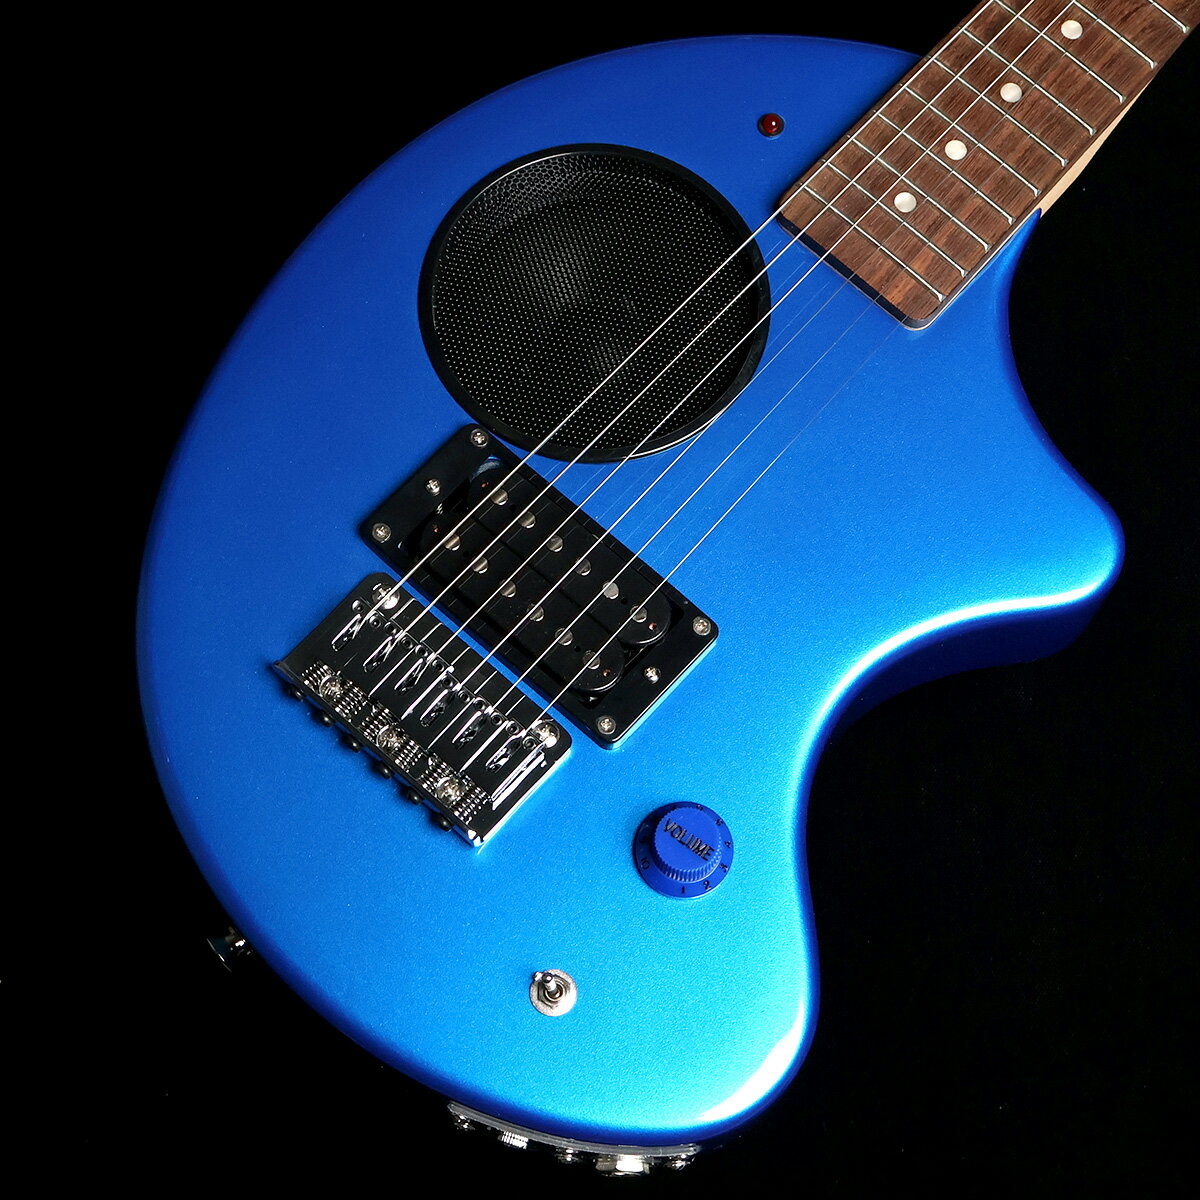 フェルナンデスZO-3の限定生産カラー、レイクプラシッドブルー（メタリックブルー）【特徴】スピーカー内蔵でどこでもエレキギター演奏ができるZO-3の限定カラーモデルが登場。持ちやすいワンサイズダウンしたエレキギターとして普段使いにも人気のモデル。新開発サーキット採用により音質が向上し、ヘッドホン端子もあるためヘッドホンでの練習も可能。ソフトケース付属。NECK : 609mm Short Scale, 22FFINGERBOARD : LaurelBODY：ALDER, 55mmCONTROLS : 1 Volume,2Way Mini-SW. (Power-SW.)OUTPUT : for Amplifier Jack×1,for Headphone Mini Jack×1JANコード：4514922203129